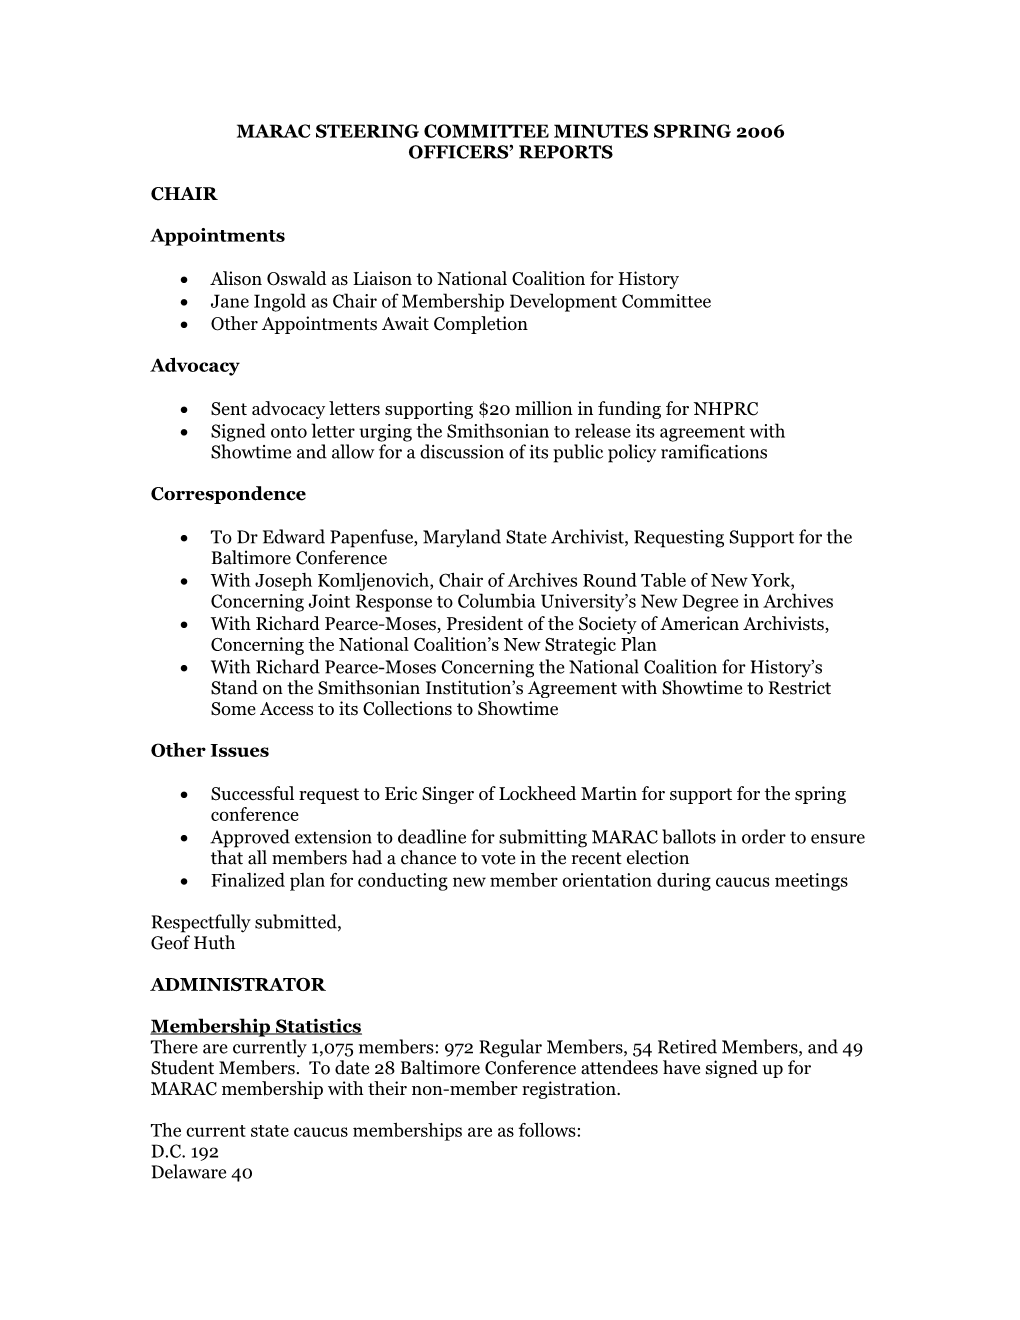 Marac Steering Committee Minutes Spring 2006